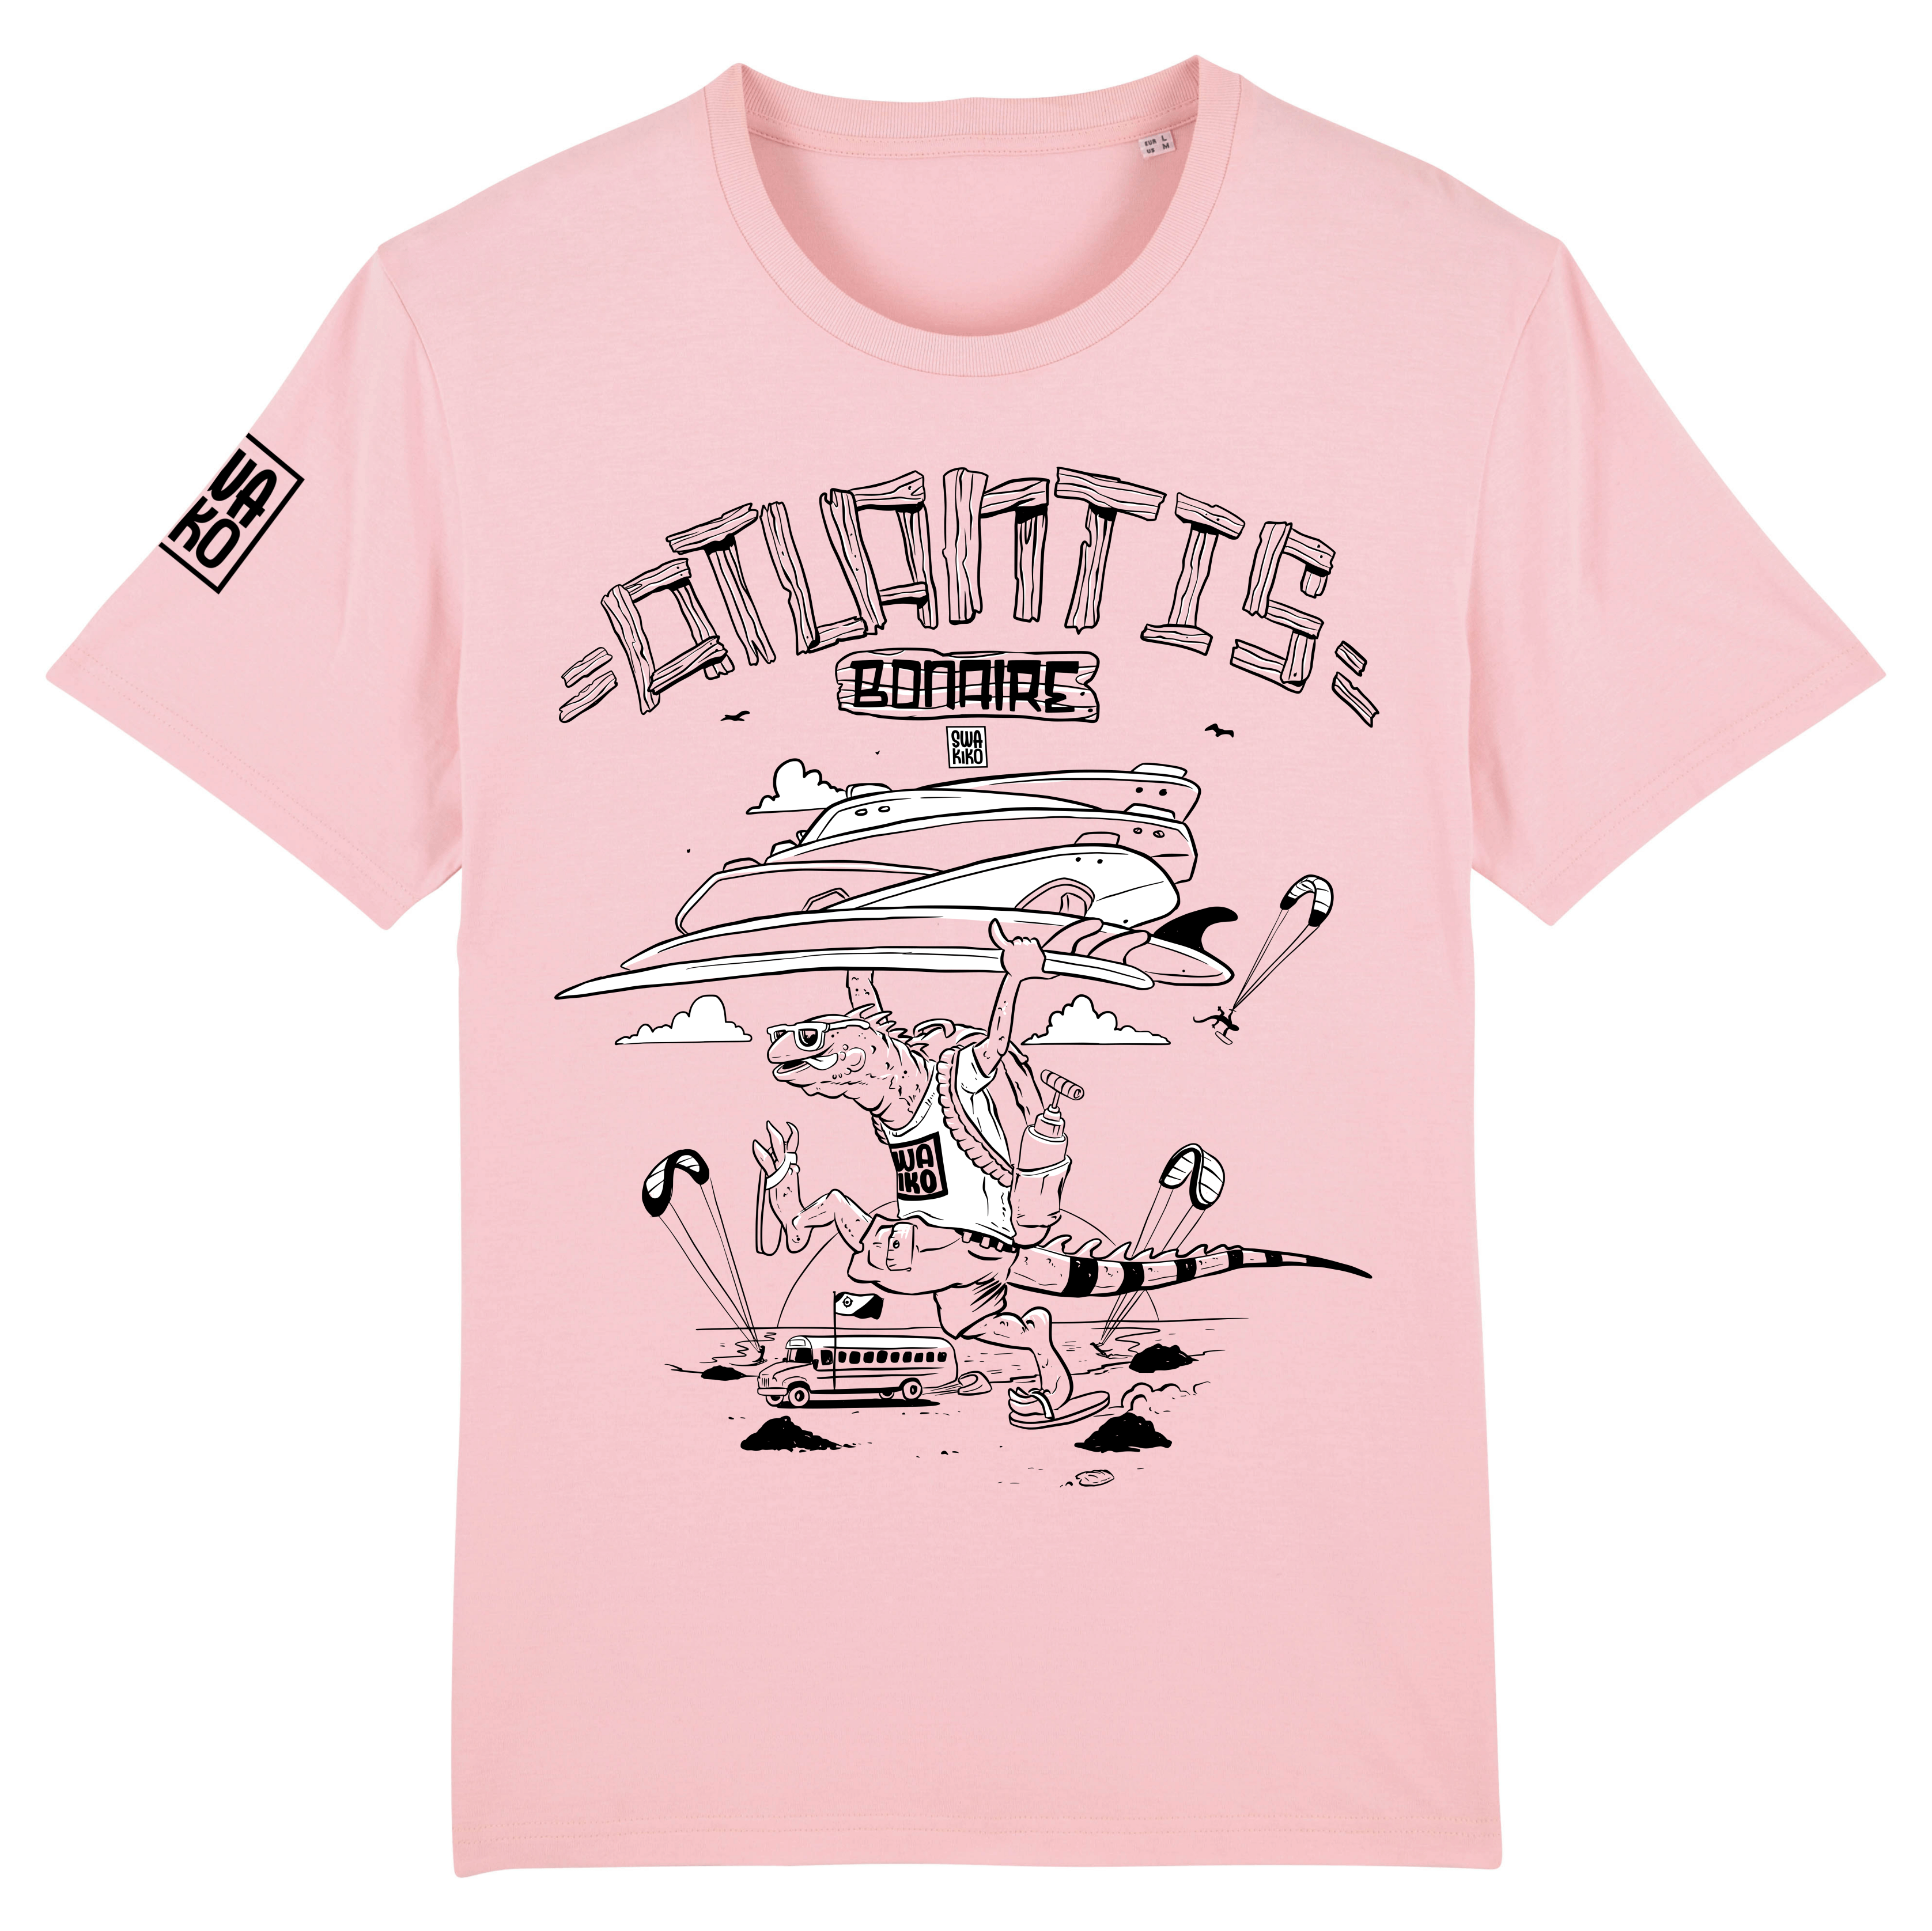 Roze Bonaire Kitesurf T-shirt met een leguaan die met een stapel kiteboards op Atlantis kitebeach loopt